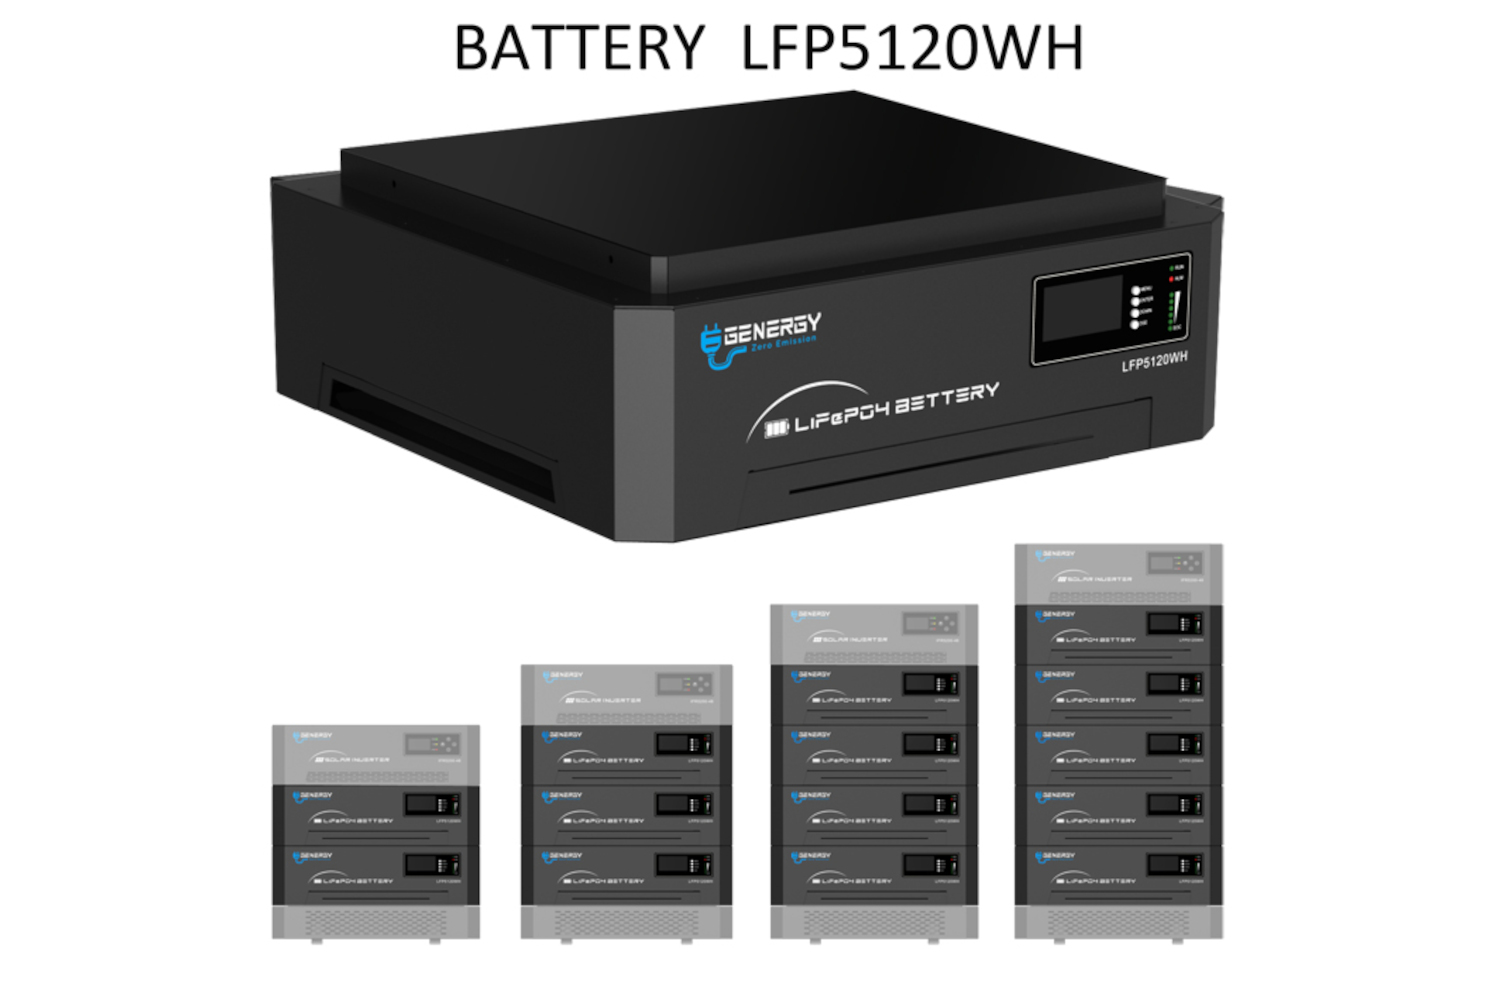 Bateria LFP5120 WH 5